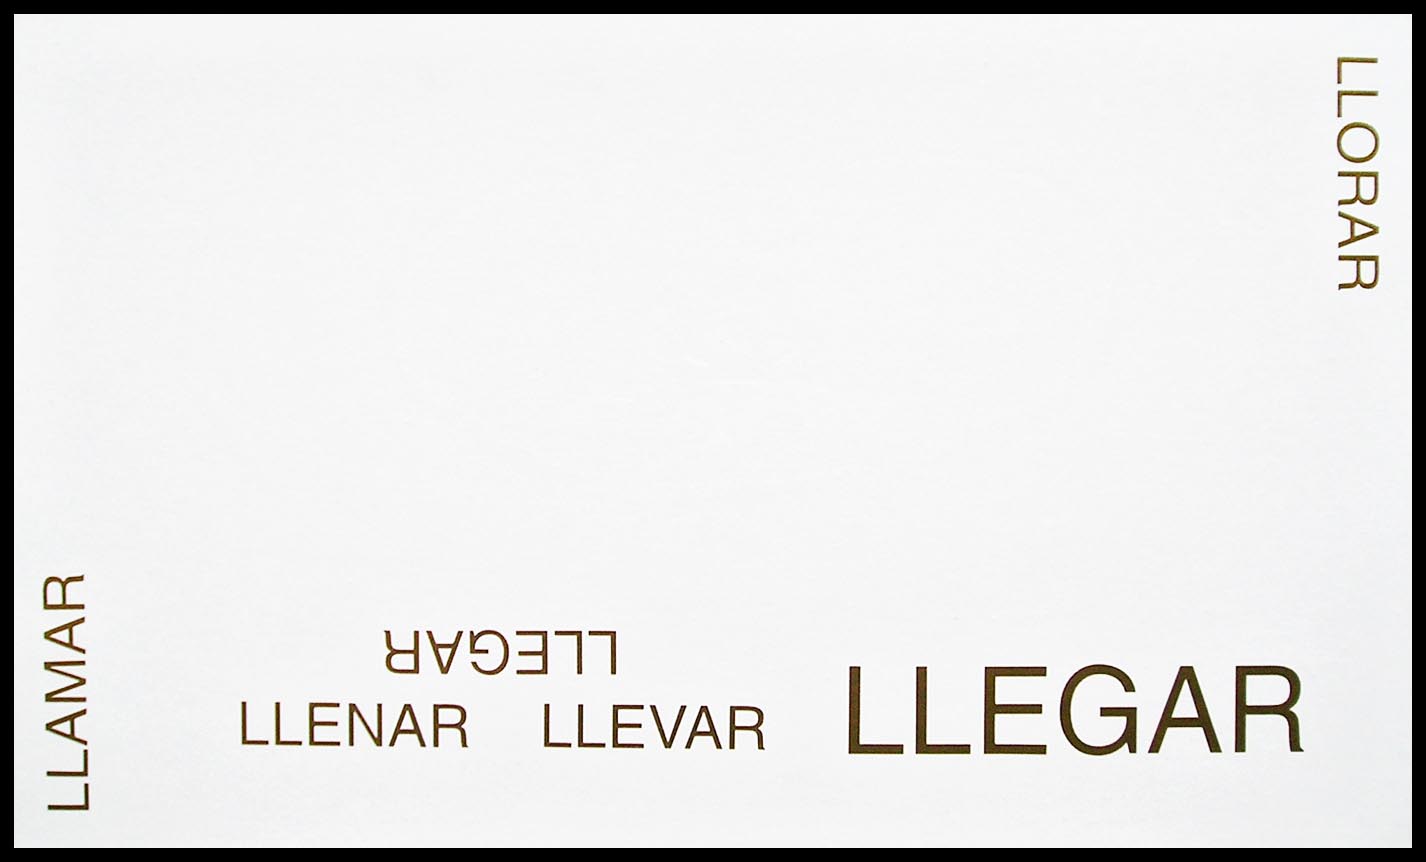 Abecedario, LL; papel collage, 29 cm x 49 cm, 2003